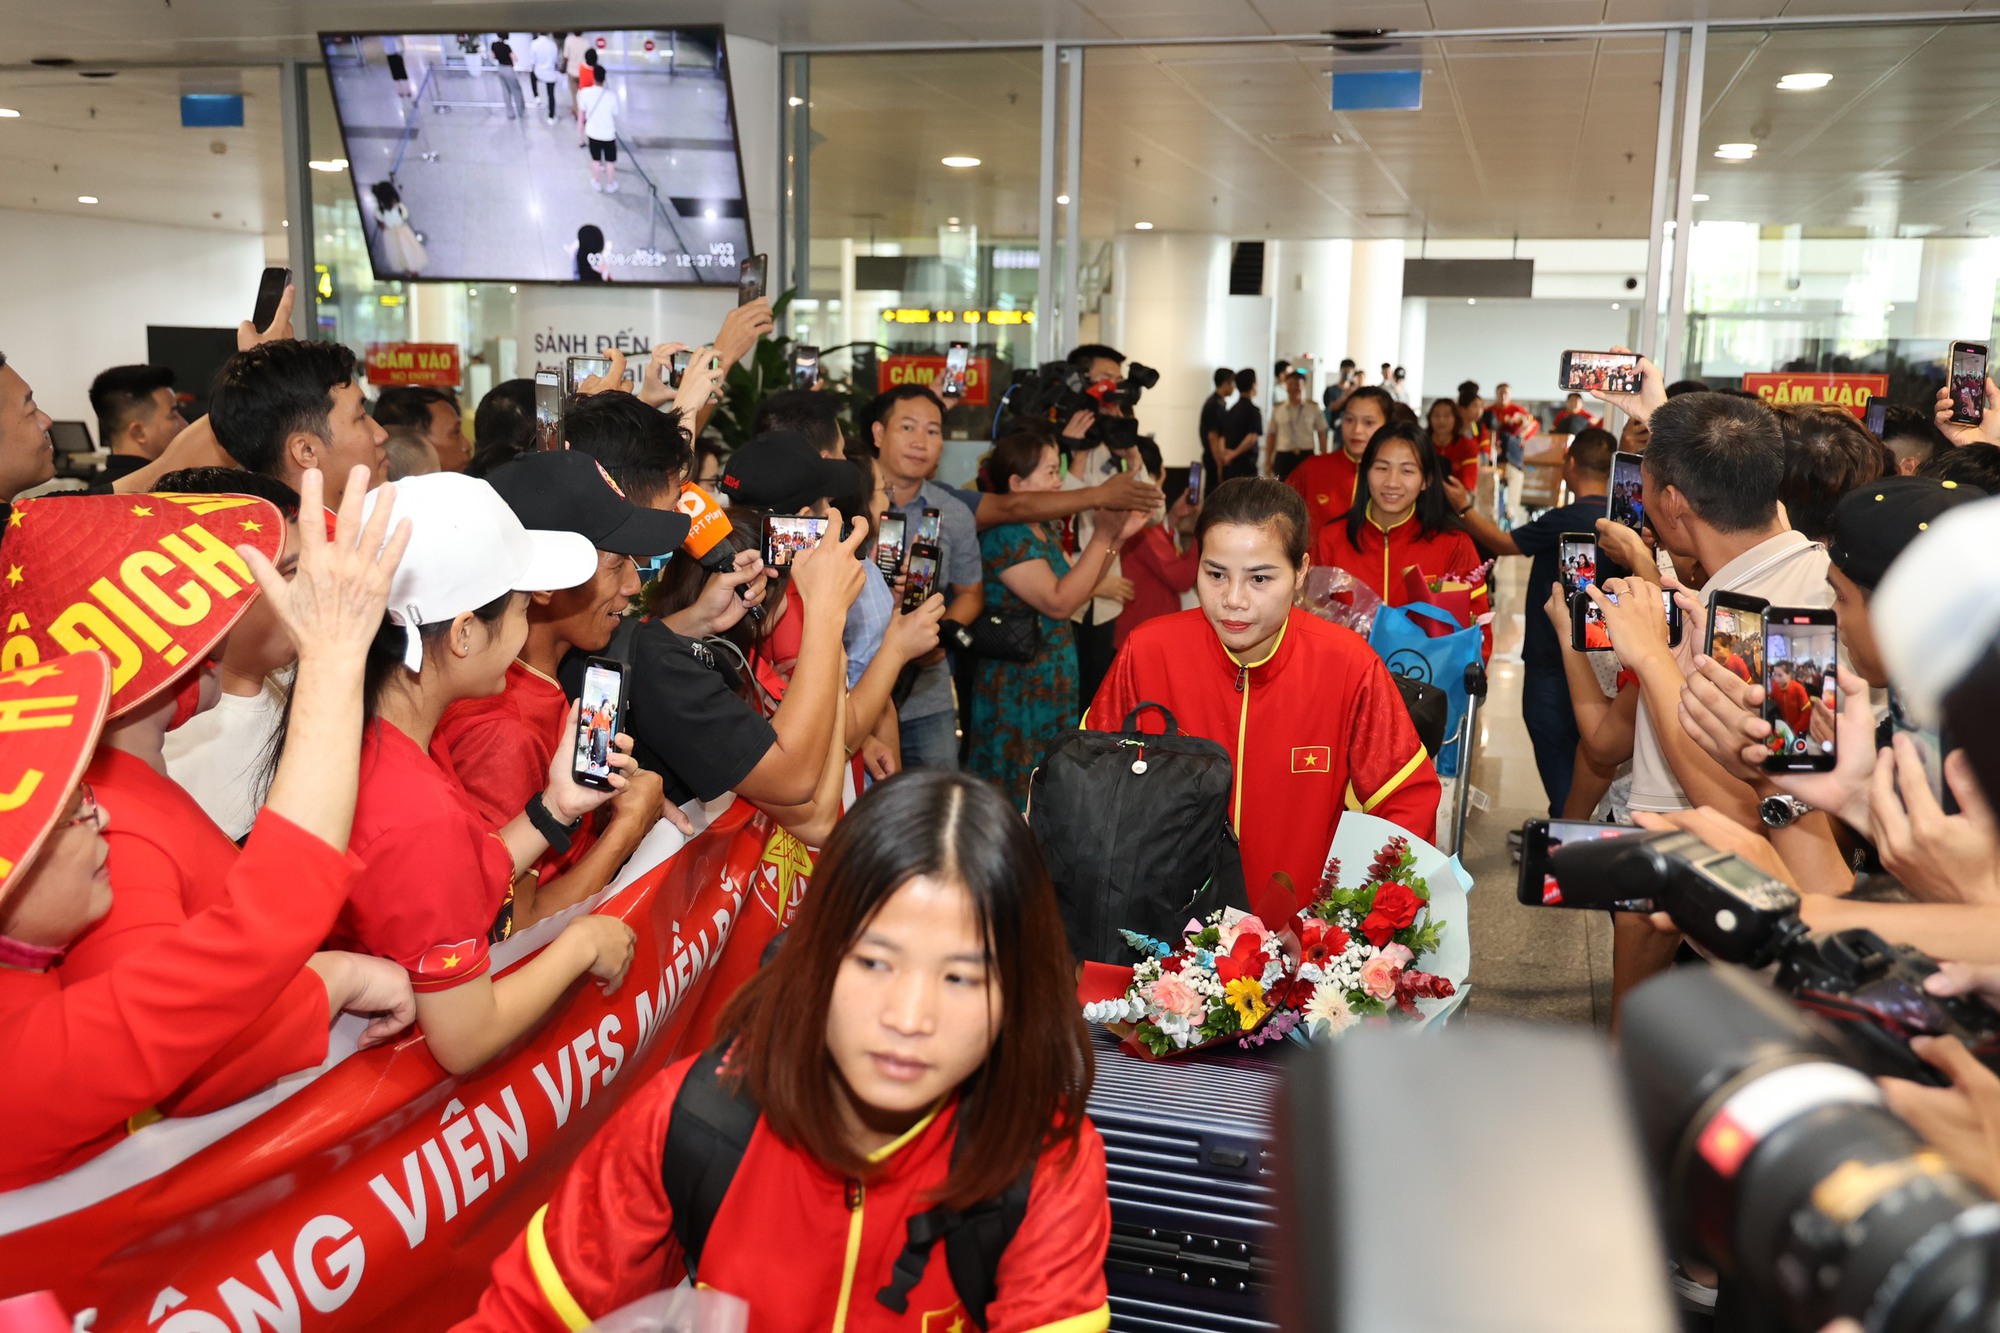 HLV Mai Đức Chung cùng nữ tuyển thủ rạng ngời trở về sau hành trình World Cup lịch sử - Ảnh 5.